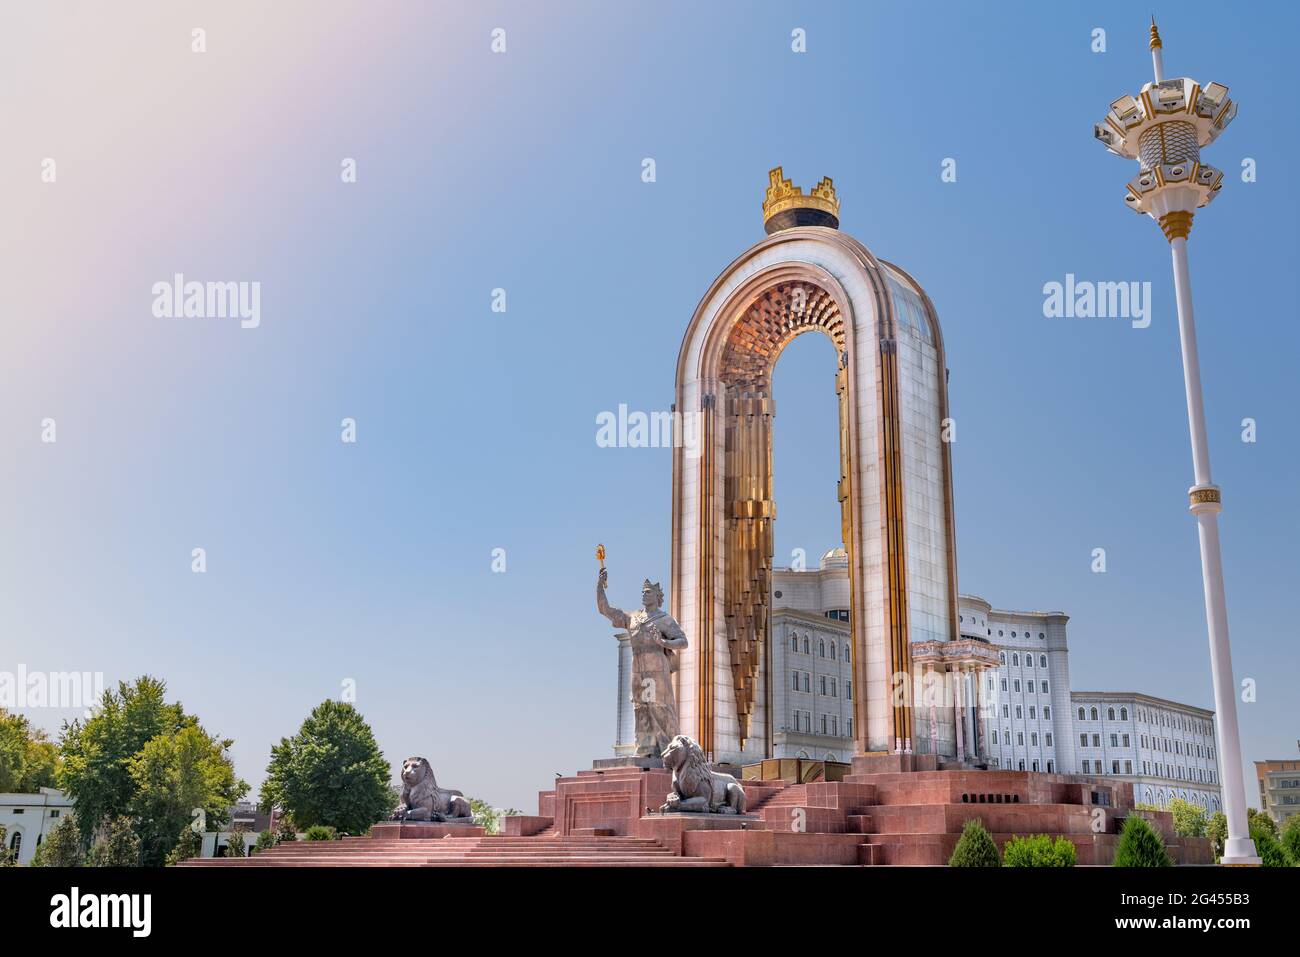 Der zentrale Platz in der Hauptstadt Tadschikistans - Duschanbe. Die Statue des Nationalhelden - SuchergebnisseWeb-ErgebnisseIsmoil Somoni Stockfoto